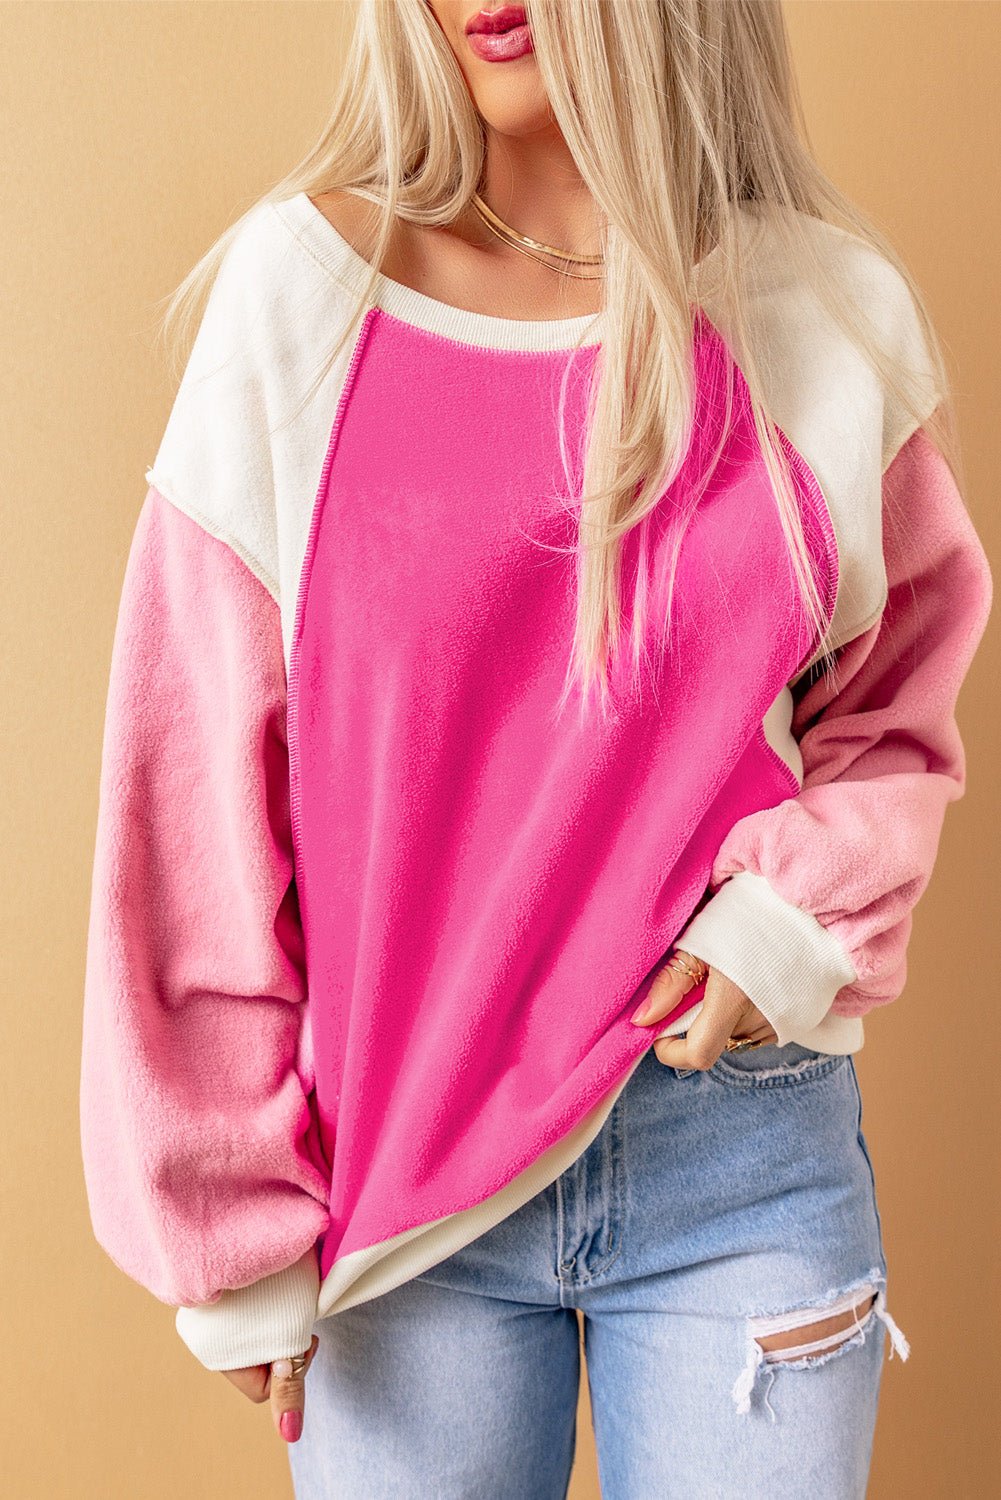 Color Block Sweatshirt - Sweatshirt Tangerine Goddess Hot Pink / S